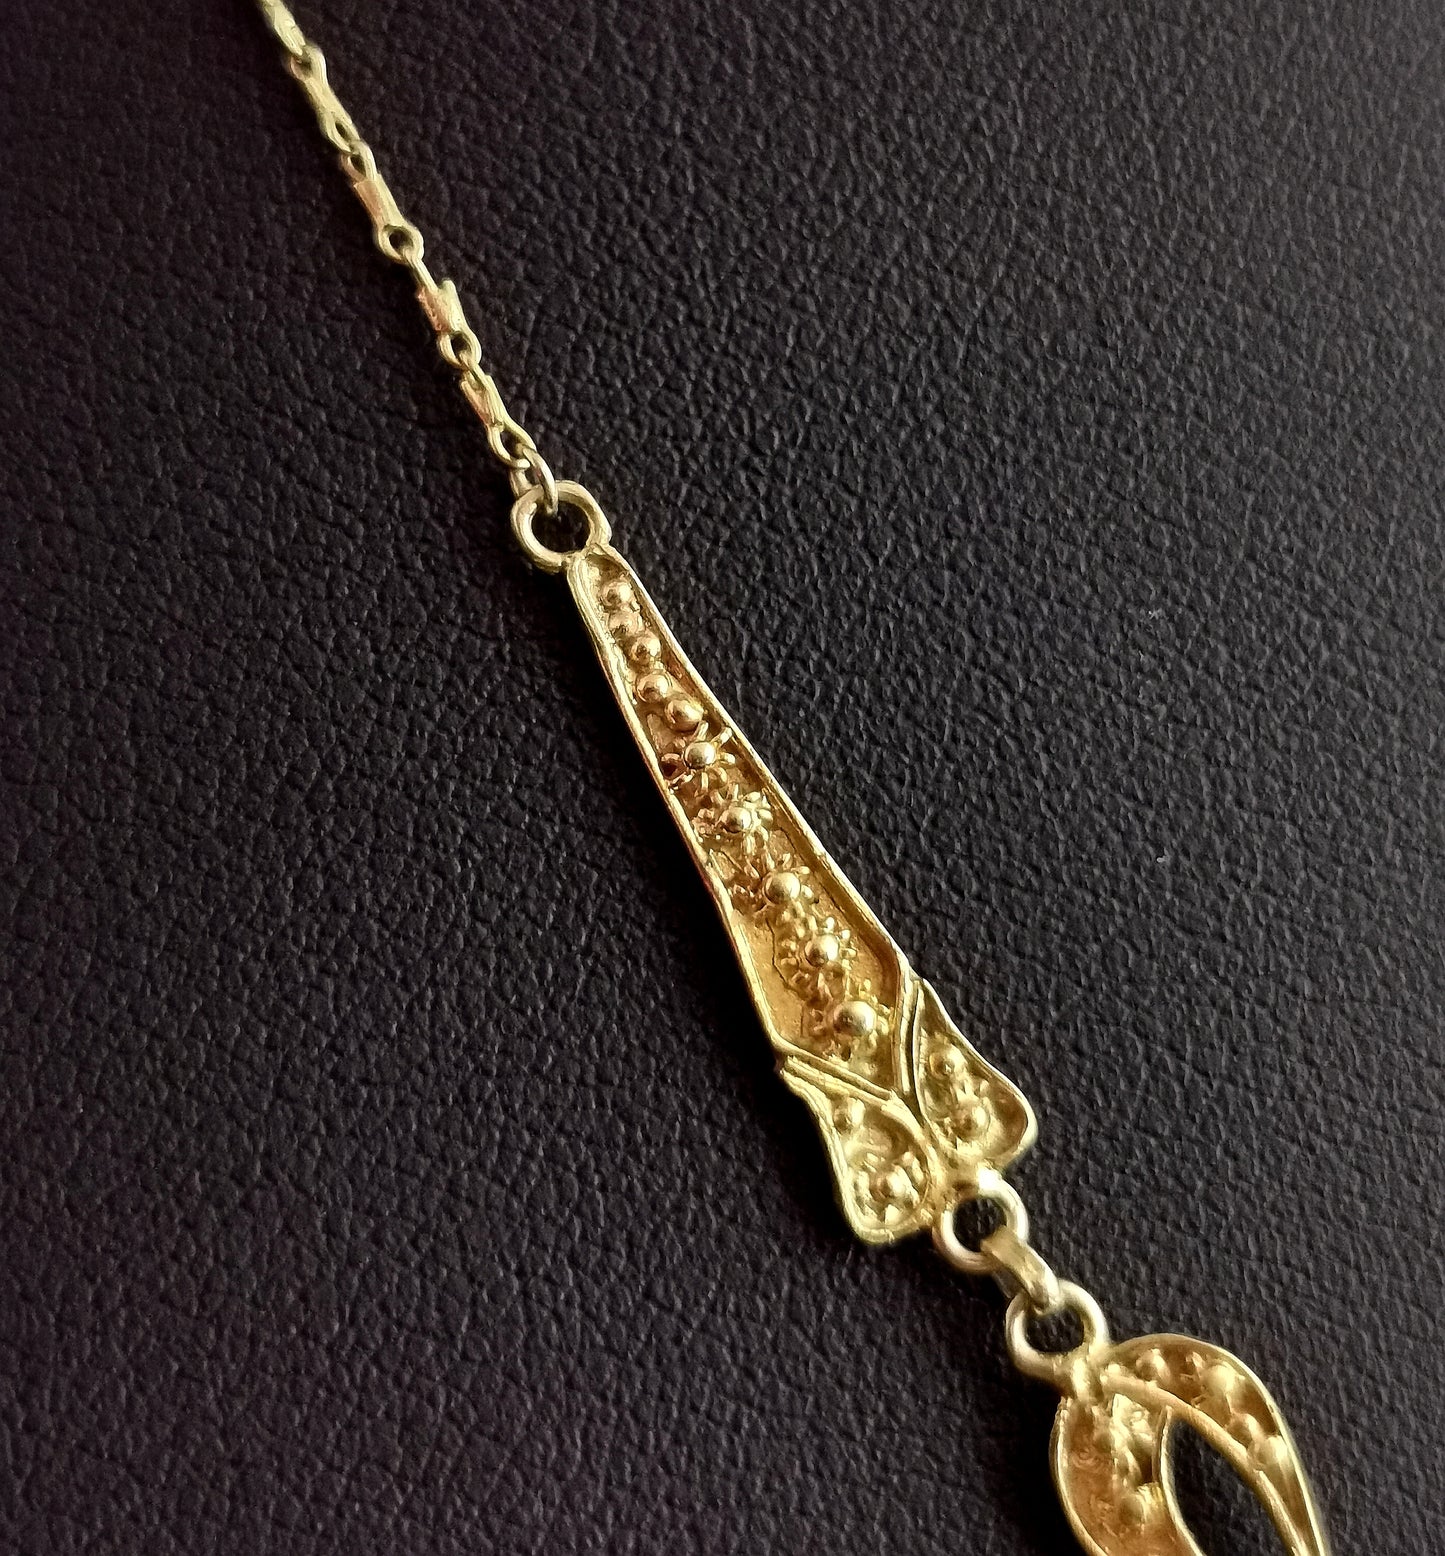 Antique 22ct gold drop necklace, floral, Art Nouveau